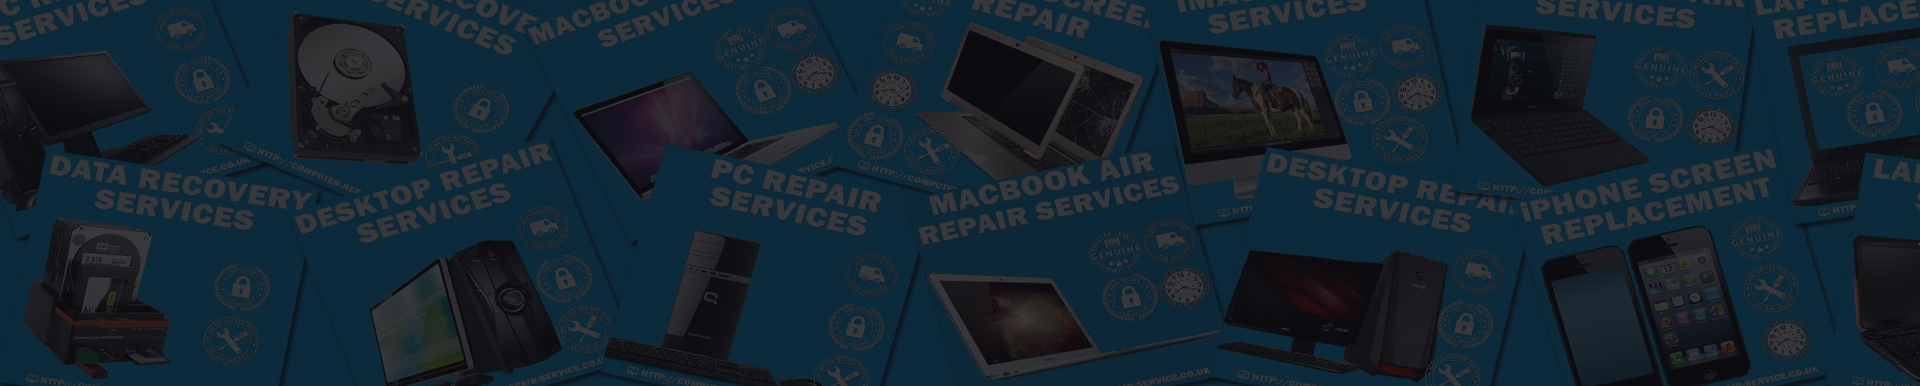 laptop services Image